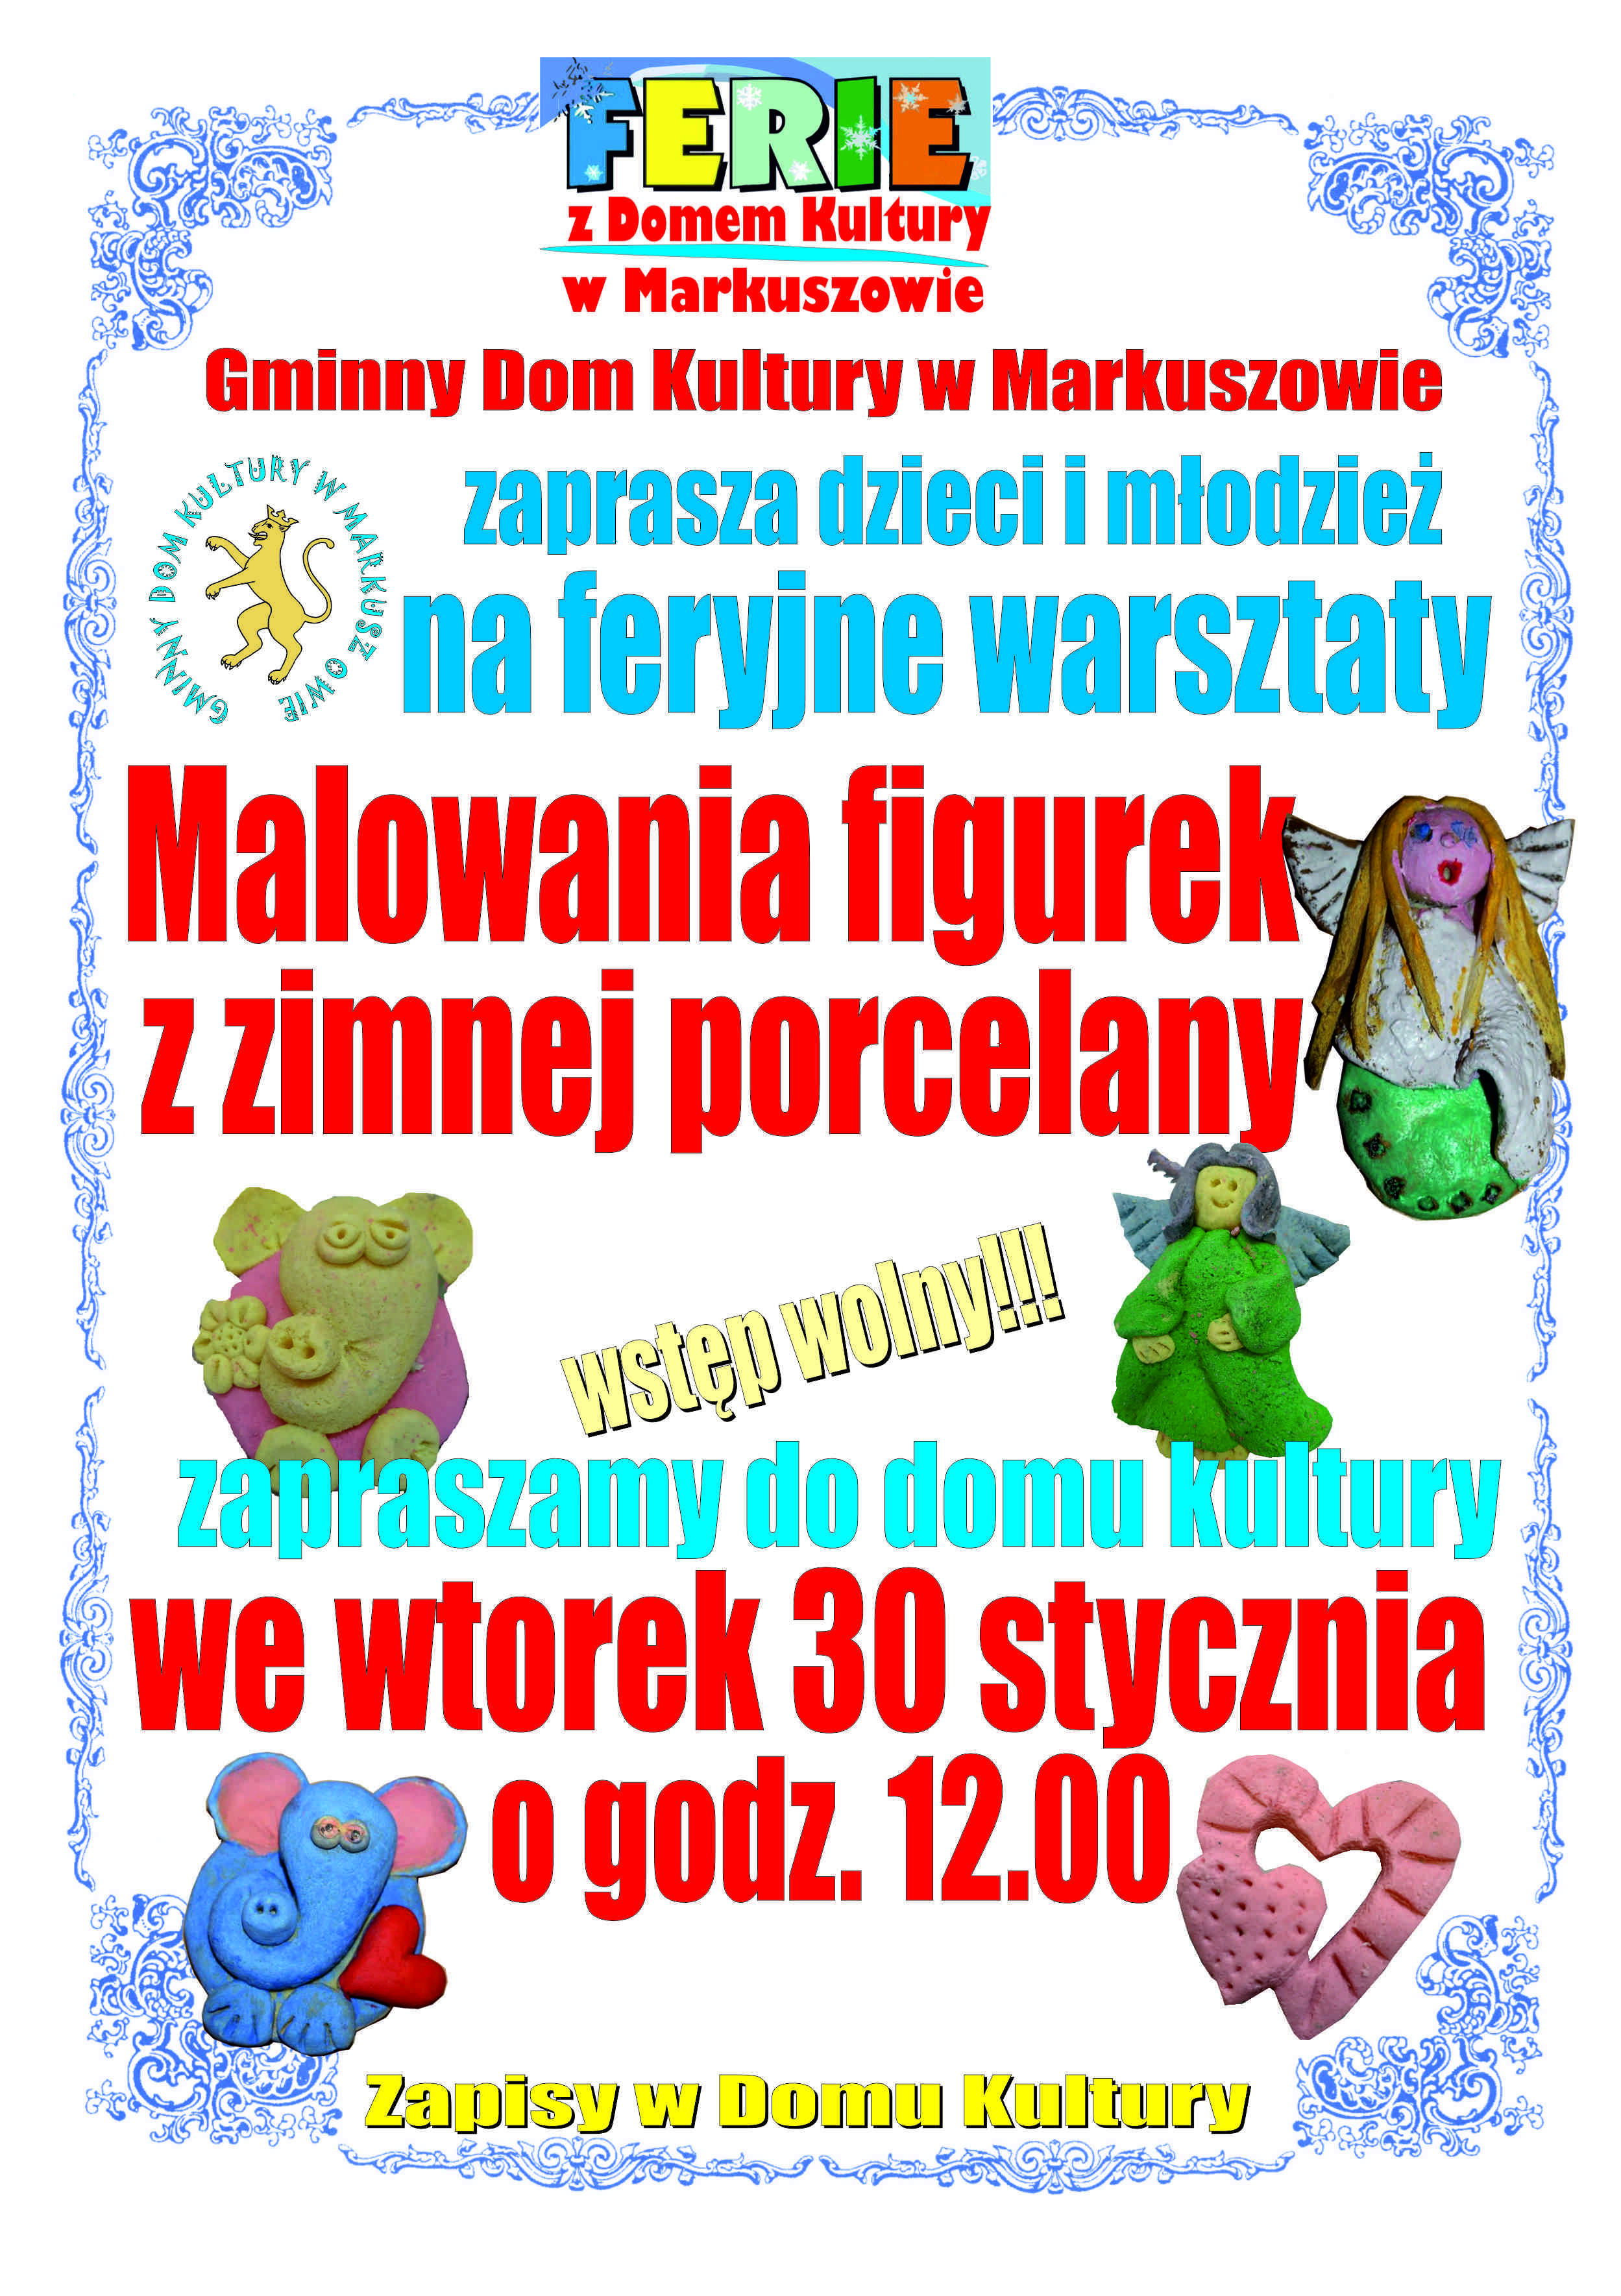 Plakat informujący o warsztatach malowania figurek z zimnej porcelany dla dzieci i młodzieży w Gminnym Domu Kultury w Markuszowie. Wydarzenie odbędzie się 30 stycznia, godz. 12:00.